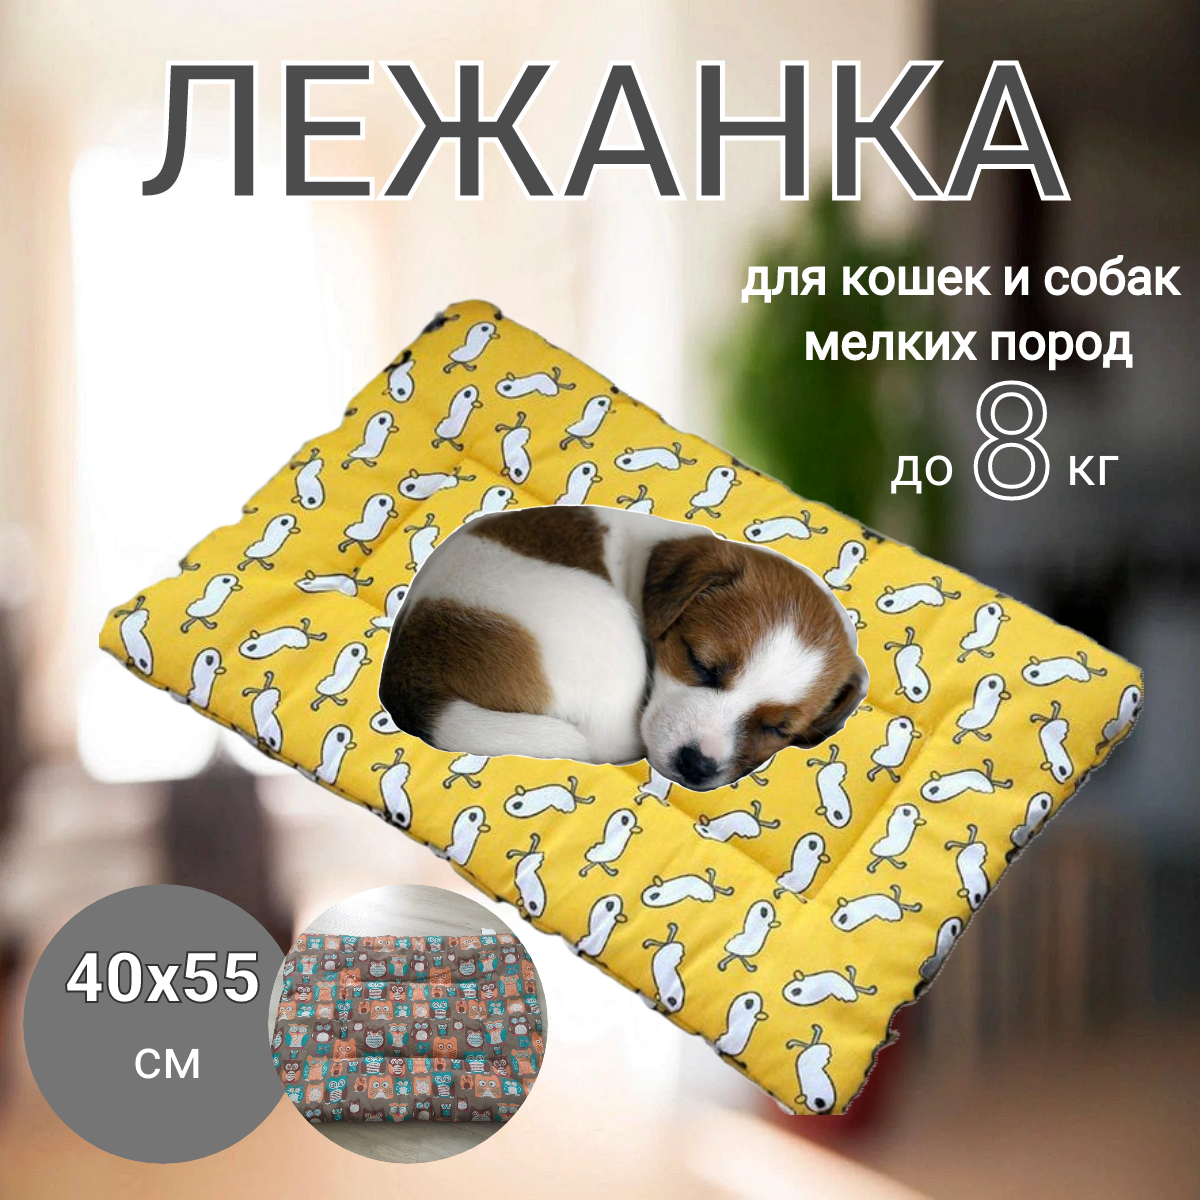 Лежанка для кошек и собак мелких пород животных; подстилка коврик 40 х 55 см